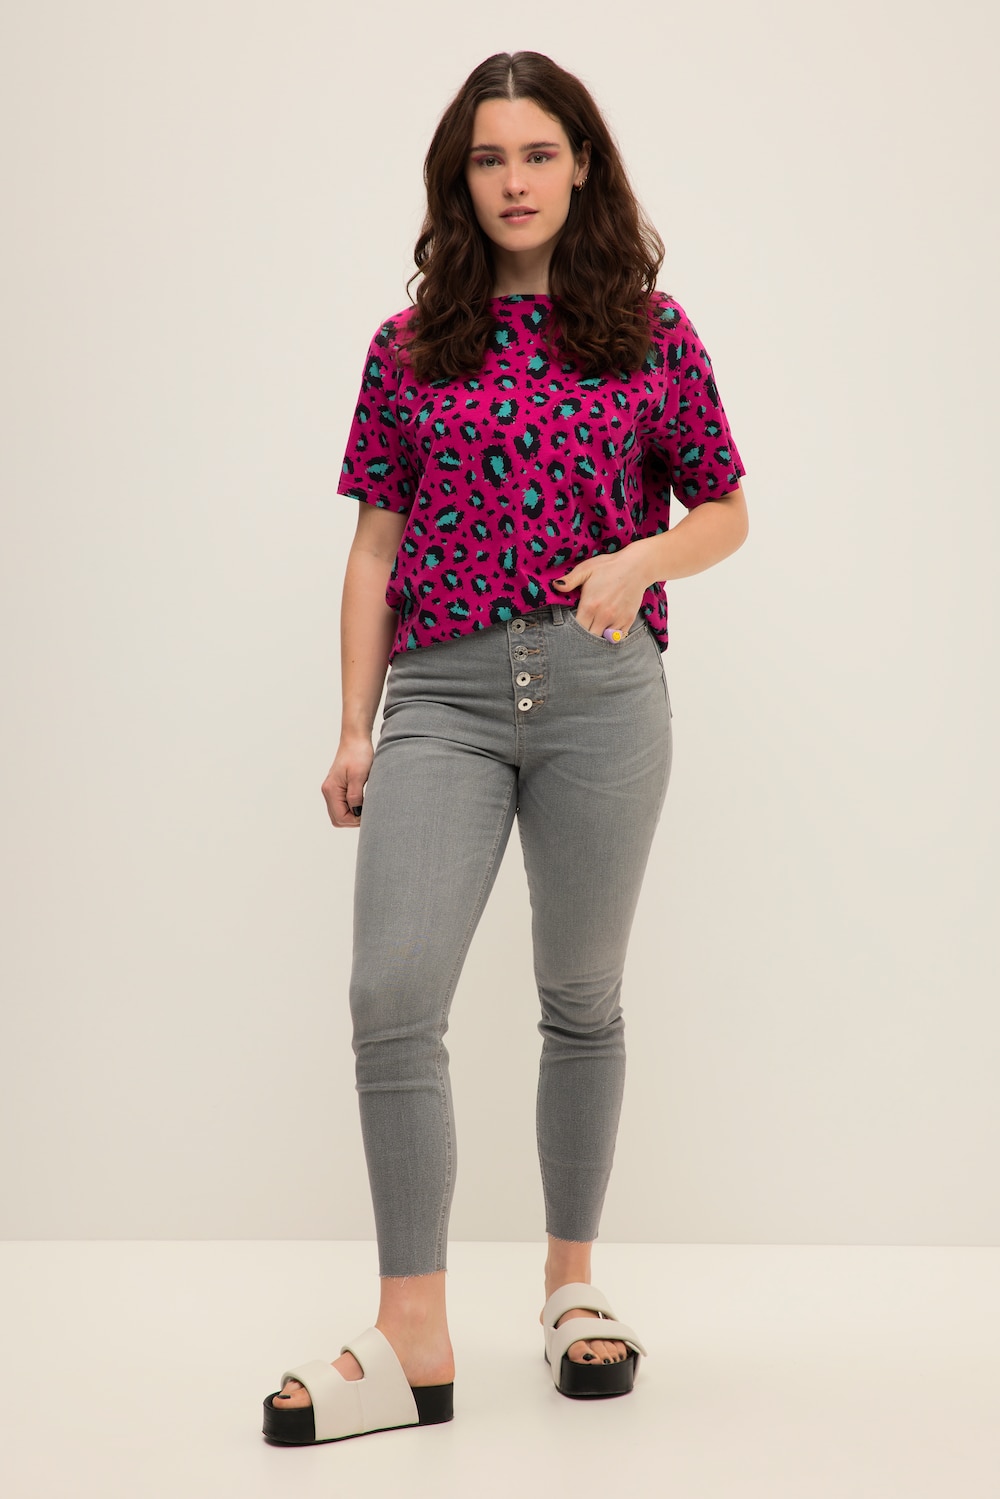 Grote Maten Skinny jeans, Dames, grijs, Maat: 54, Katoen/Polyester, Studio Untold